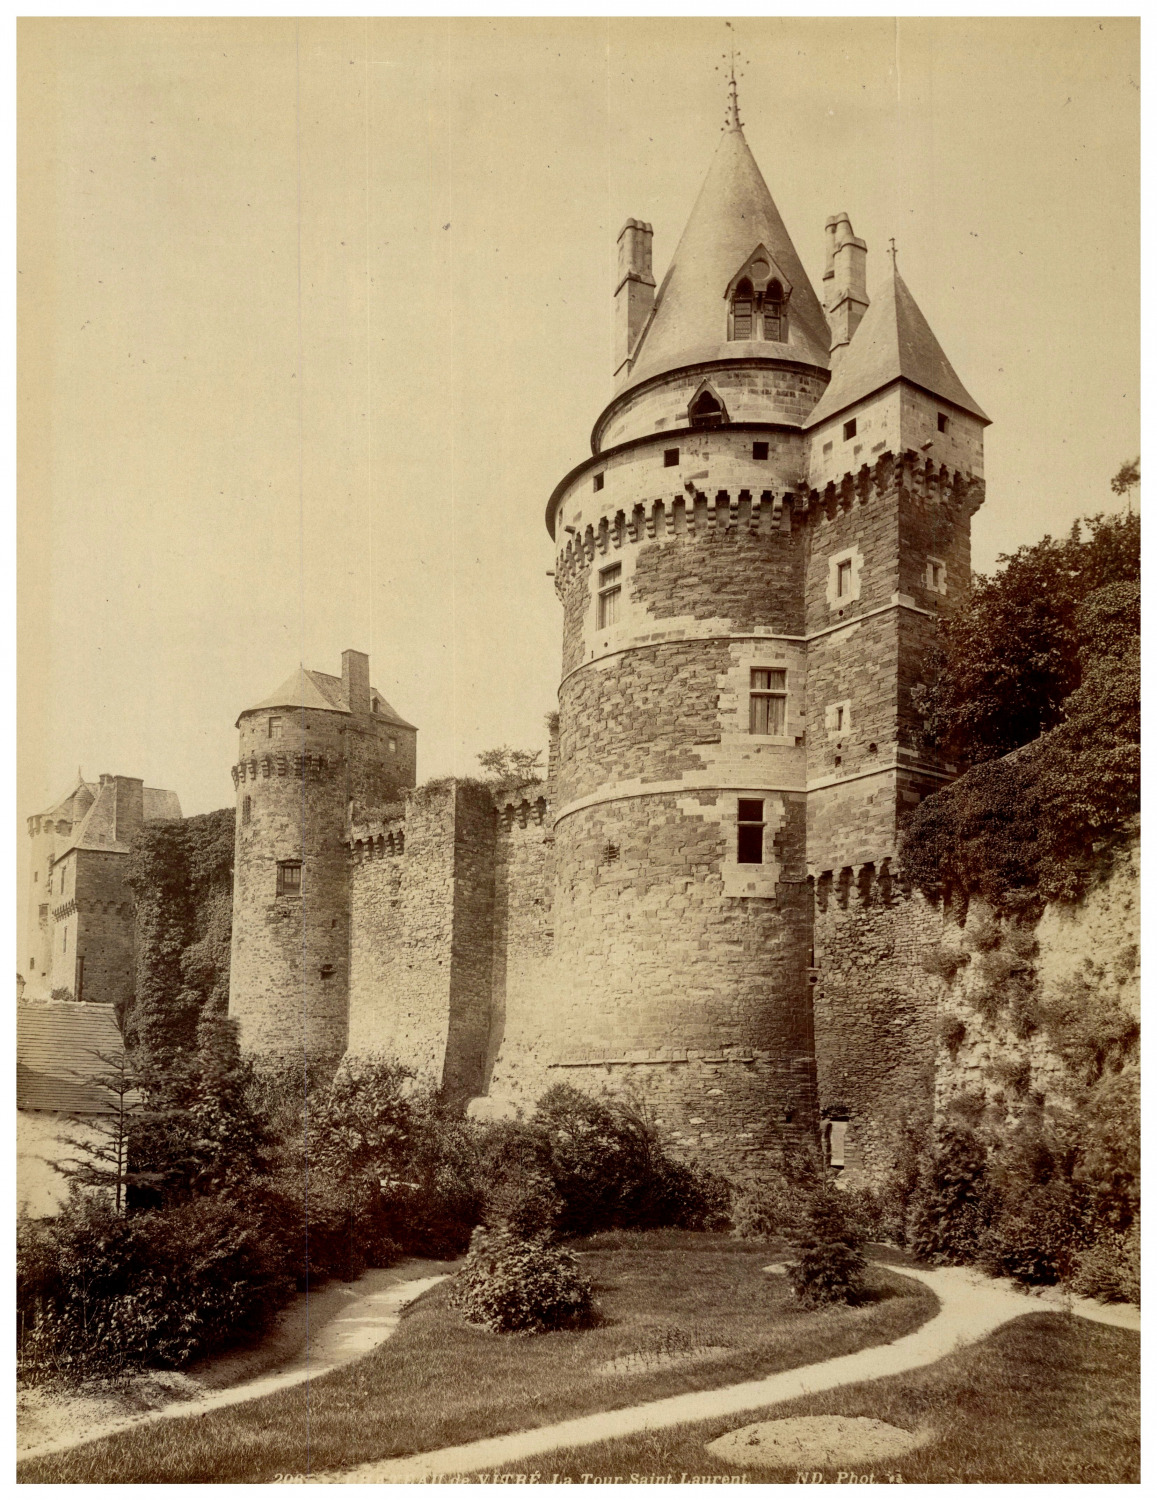 France, Vitré, Château de Vitré Vintage print, Albumin Print 27.5x21  